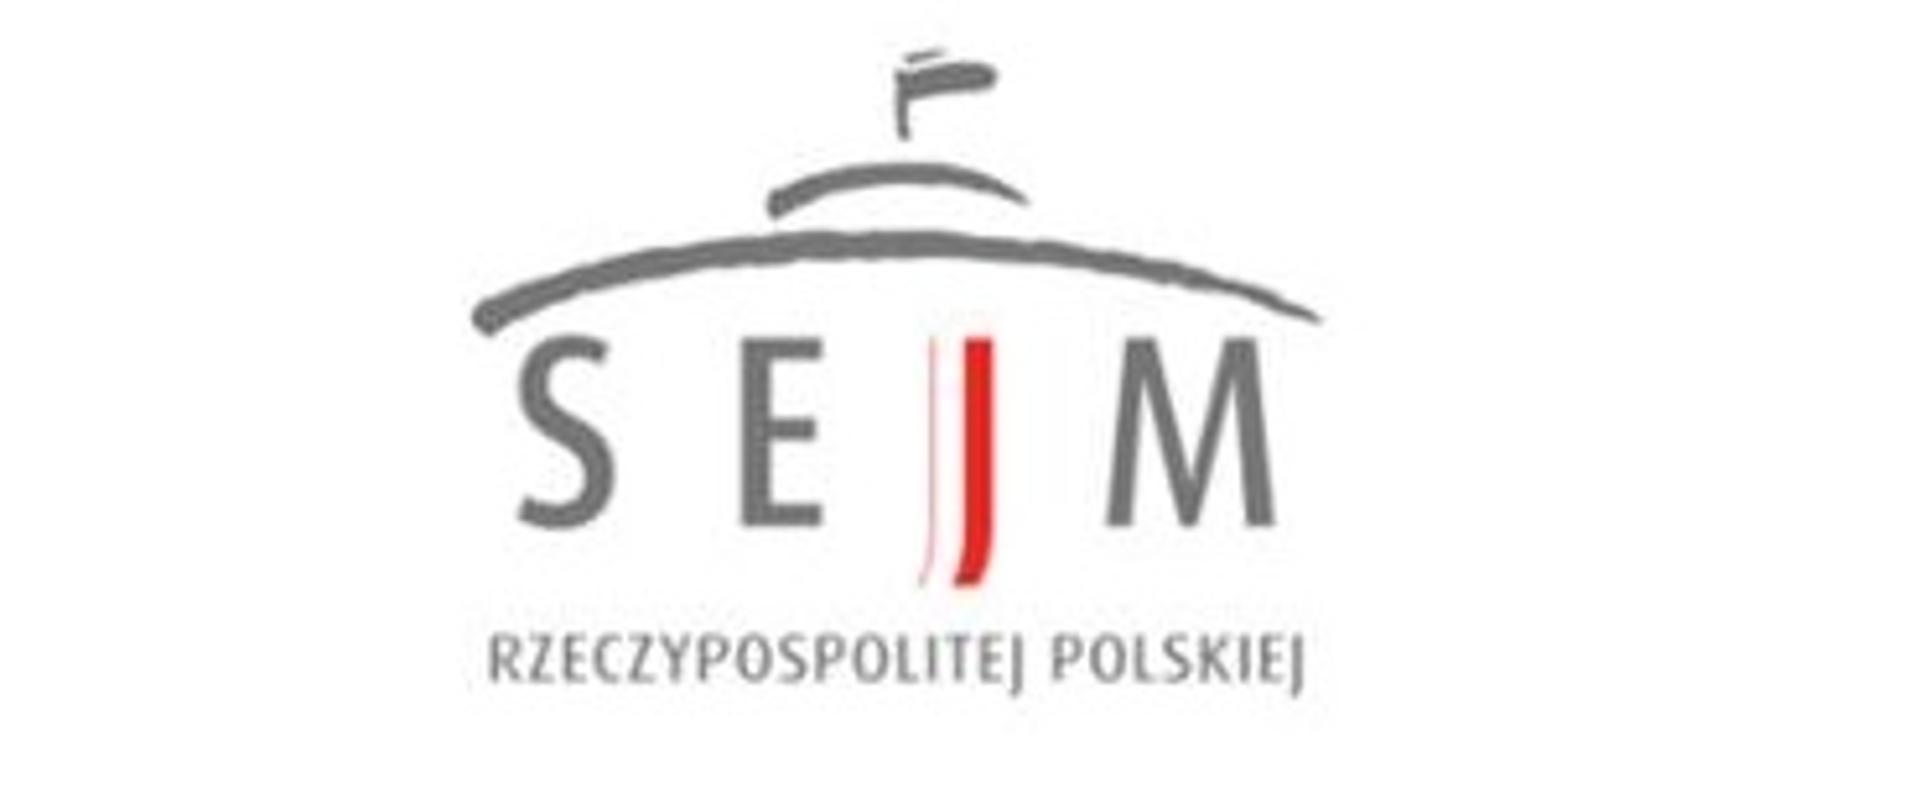 Zdjęcie przedstawia logo oraz napis SEJM RZECZYPOSPOLITEJ POLSKIEJ